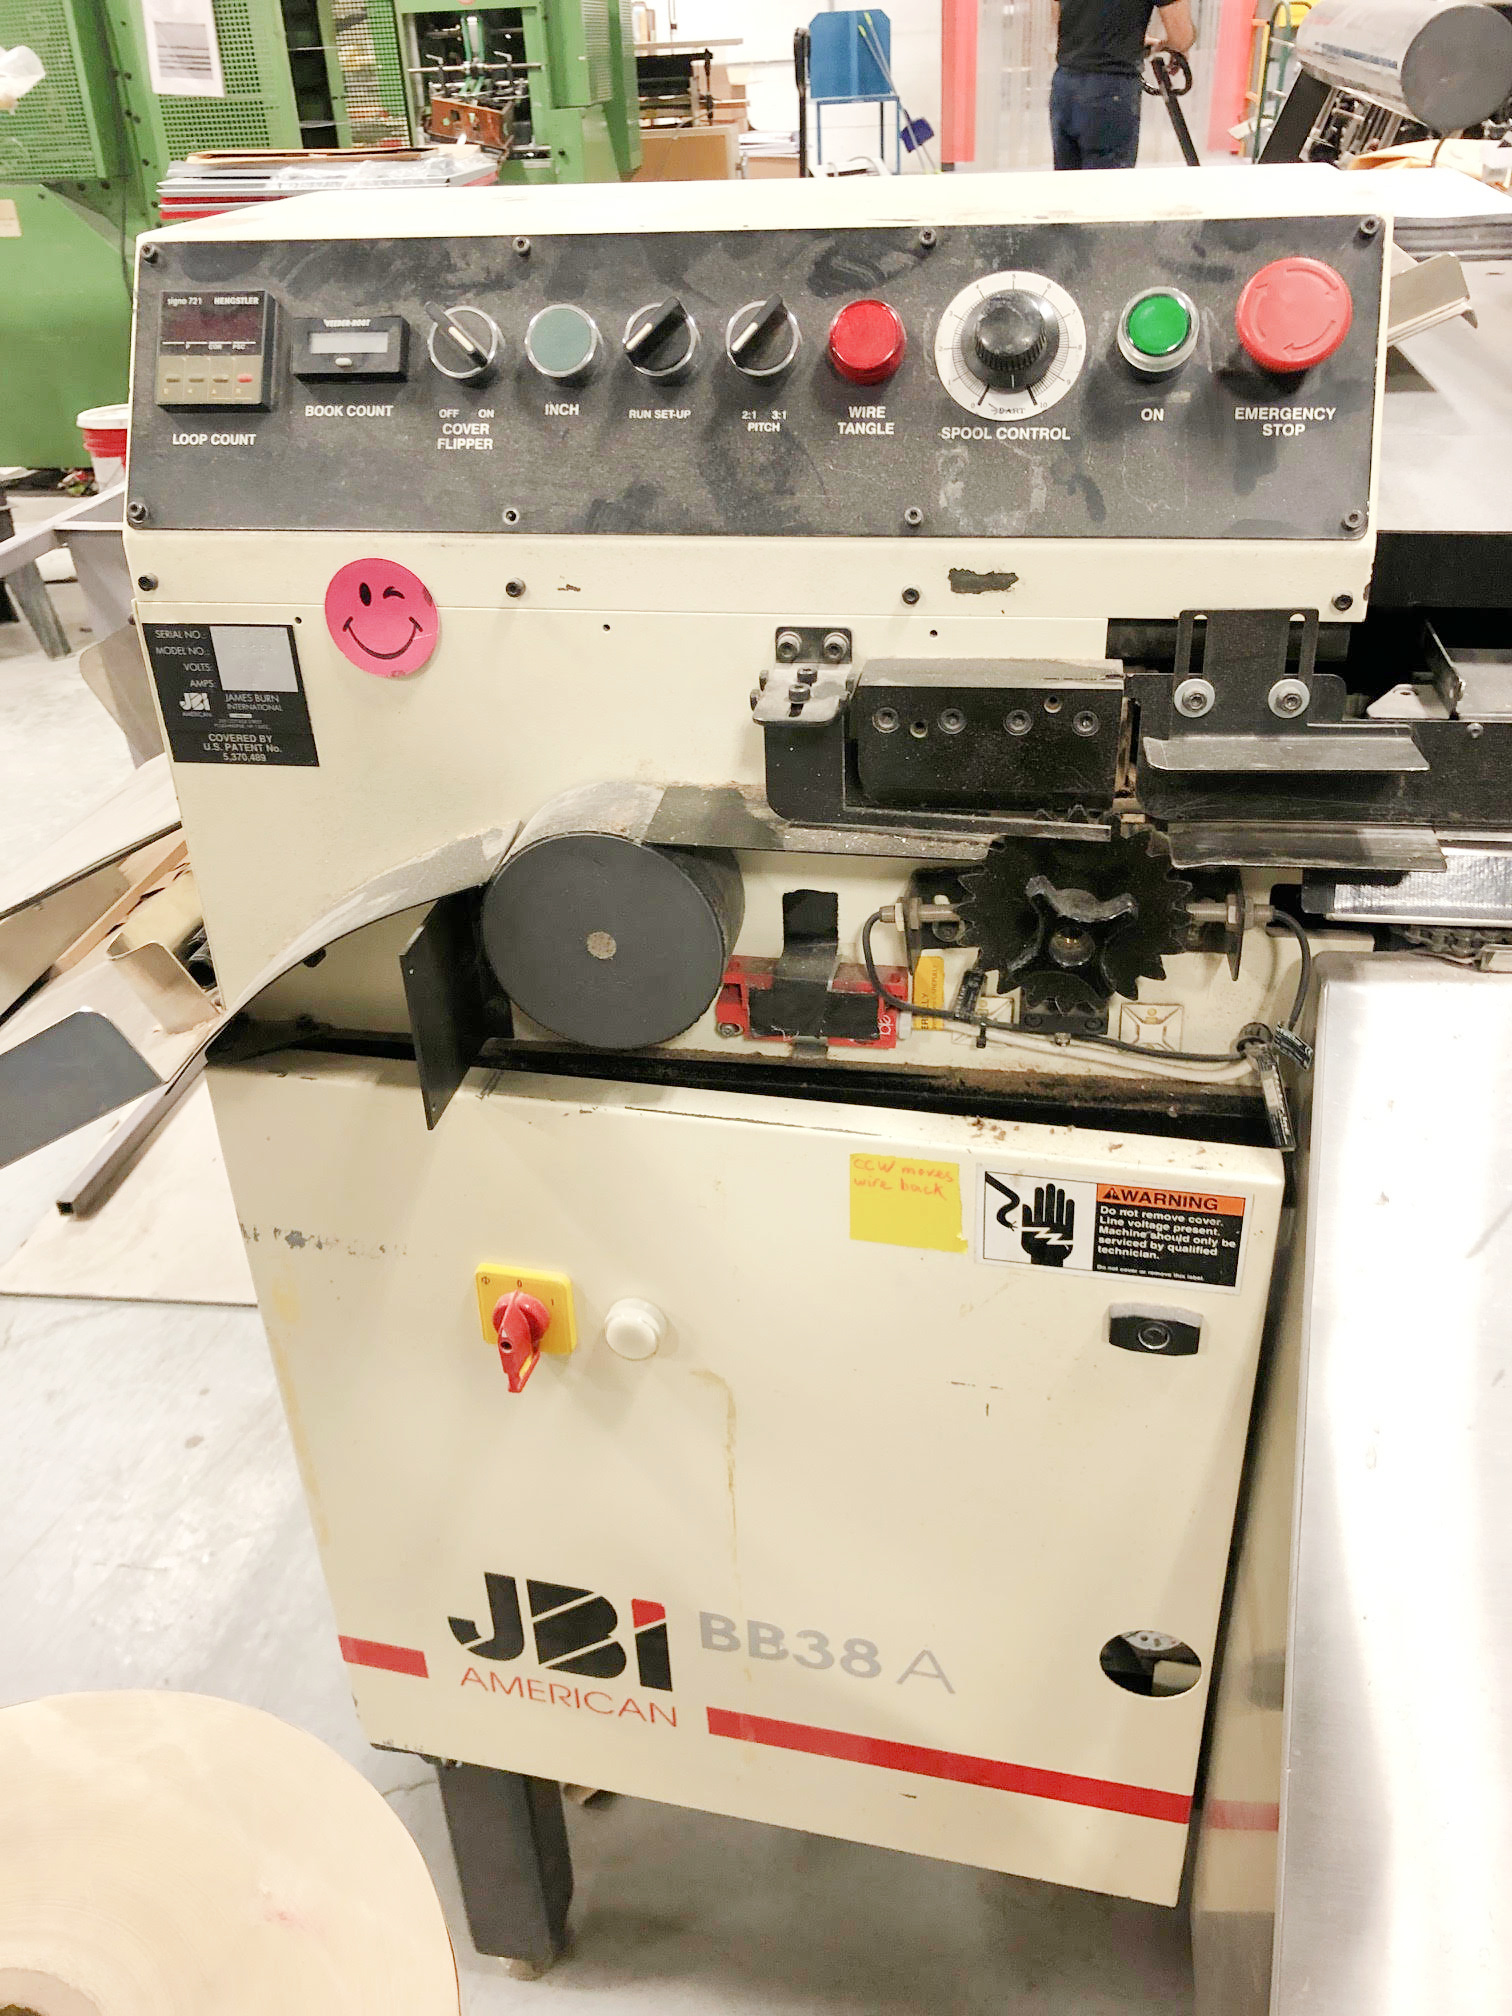 Equipment Lot: Scott 5000 Tab Machine, Rilecart R-500 Calendar Binding Machine & JBI BB38A Wire-O Machine (used) Item # UE-122321D (Canada)